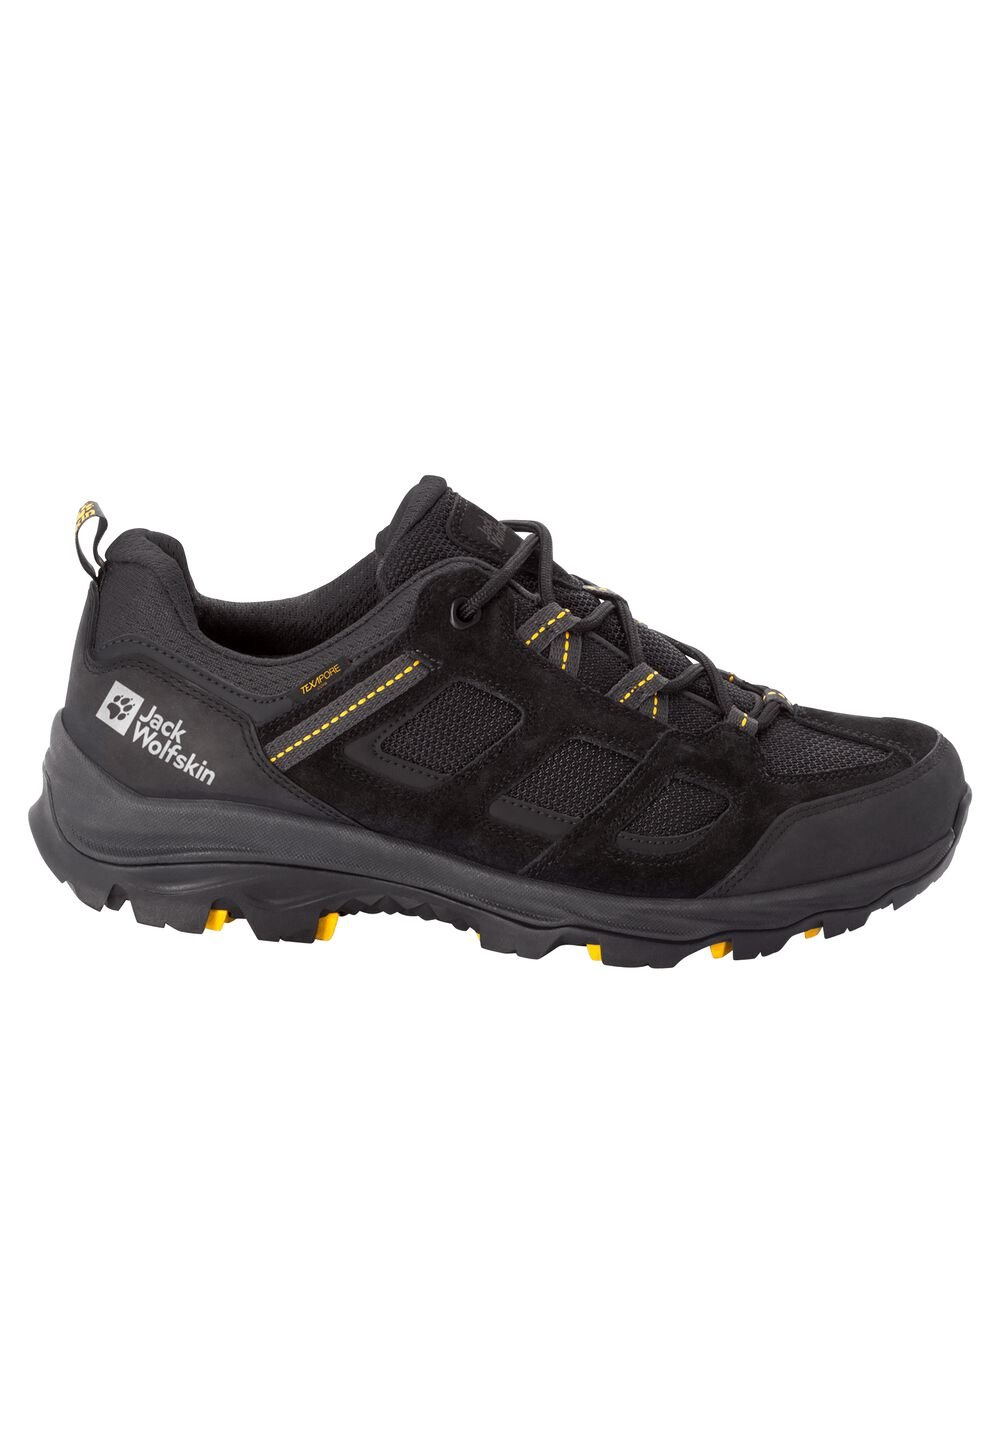 Chaussures de randonnée imperméables hommes Vojo 3 Texapore Low Men 8 noir black / burly yellow XT